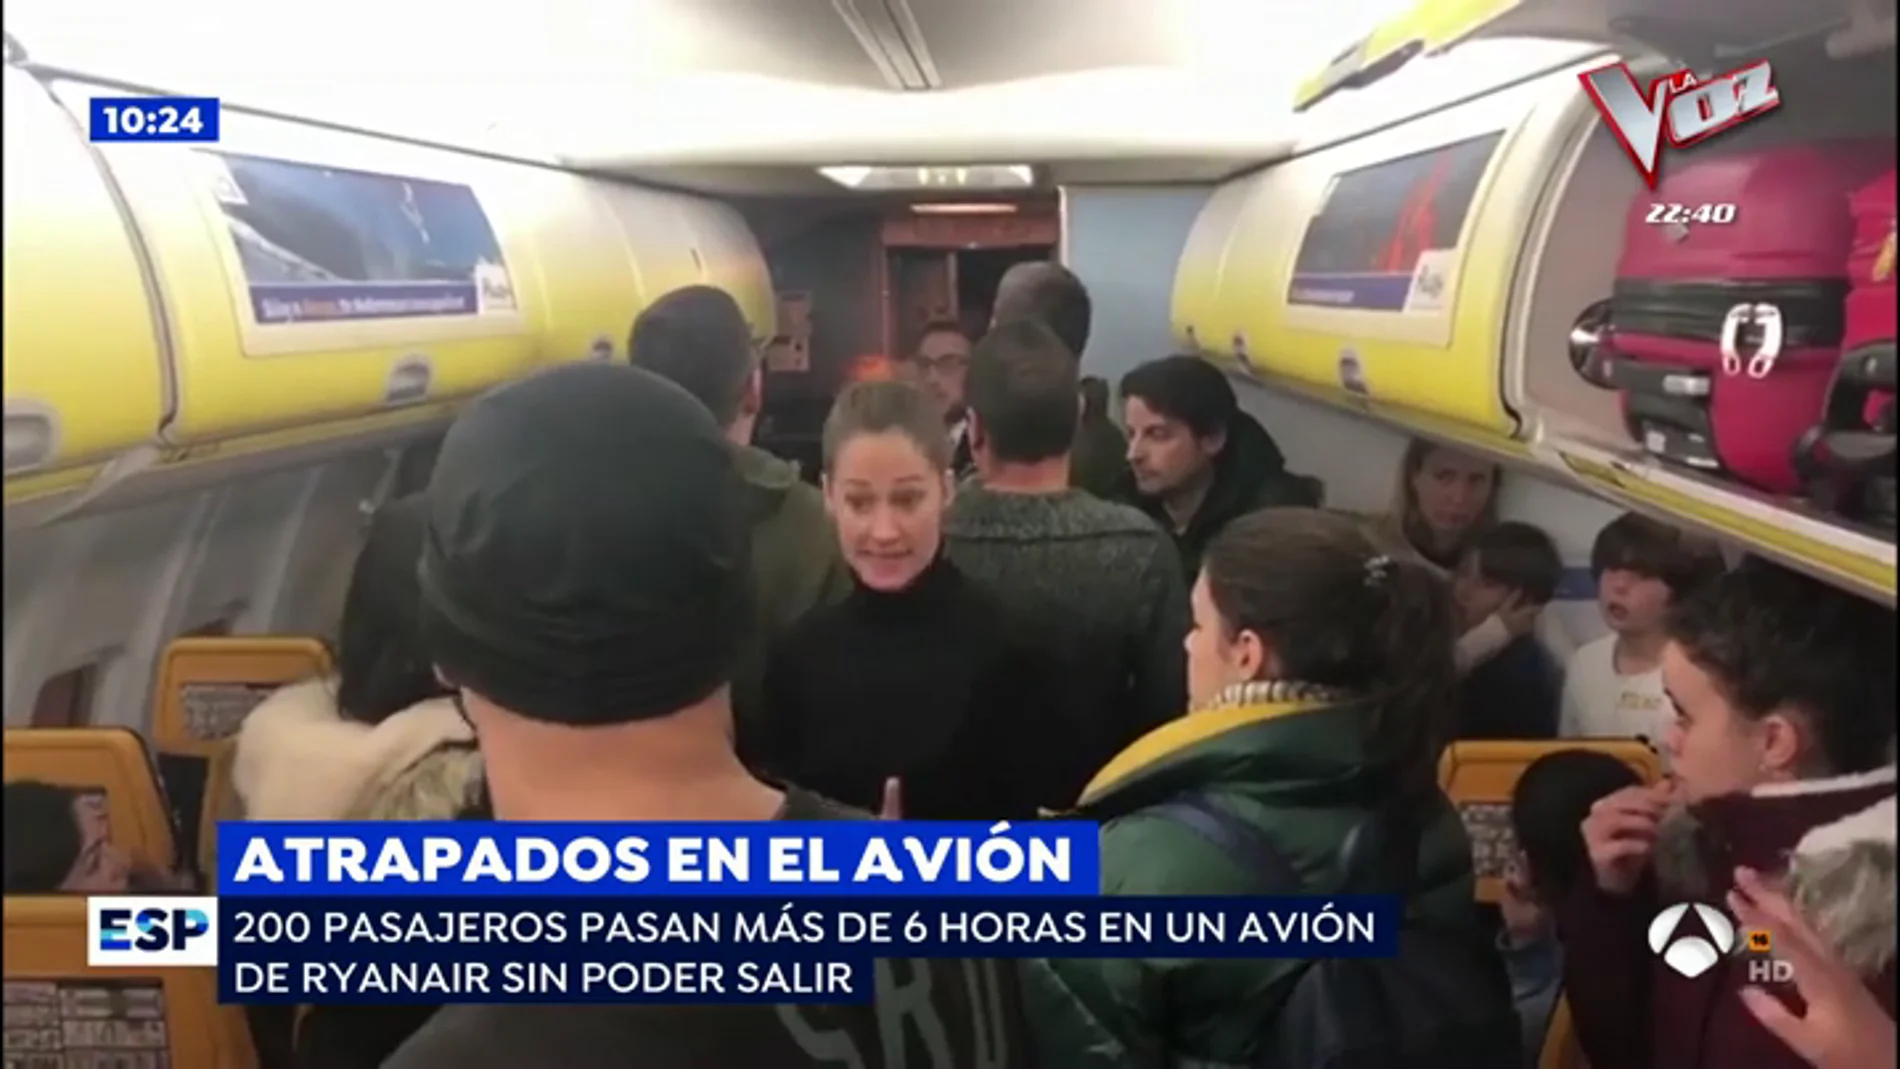 La angustia de los pasajeros españoles encerrados 6 horas en un Ryanair: "Estamos secuestrados en un avión"